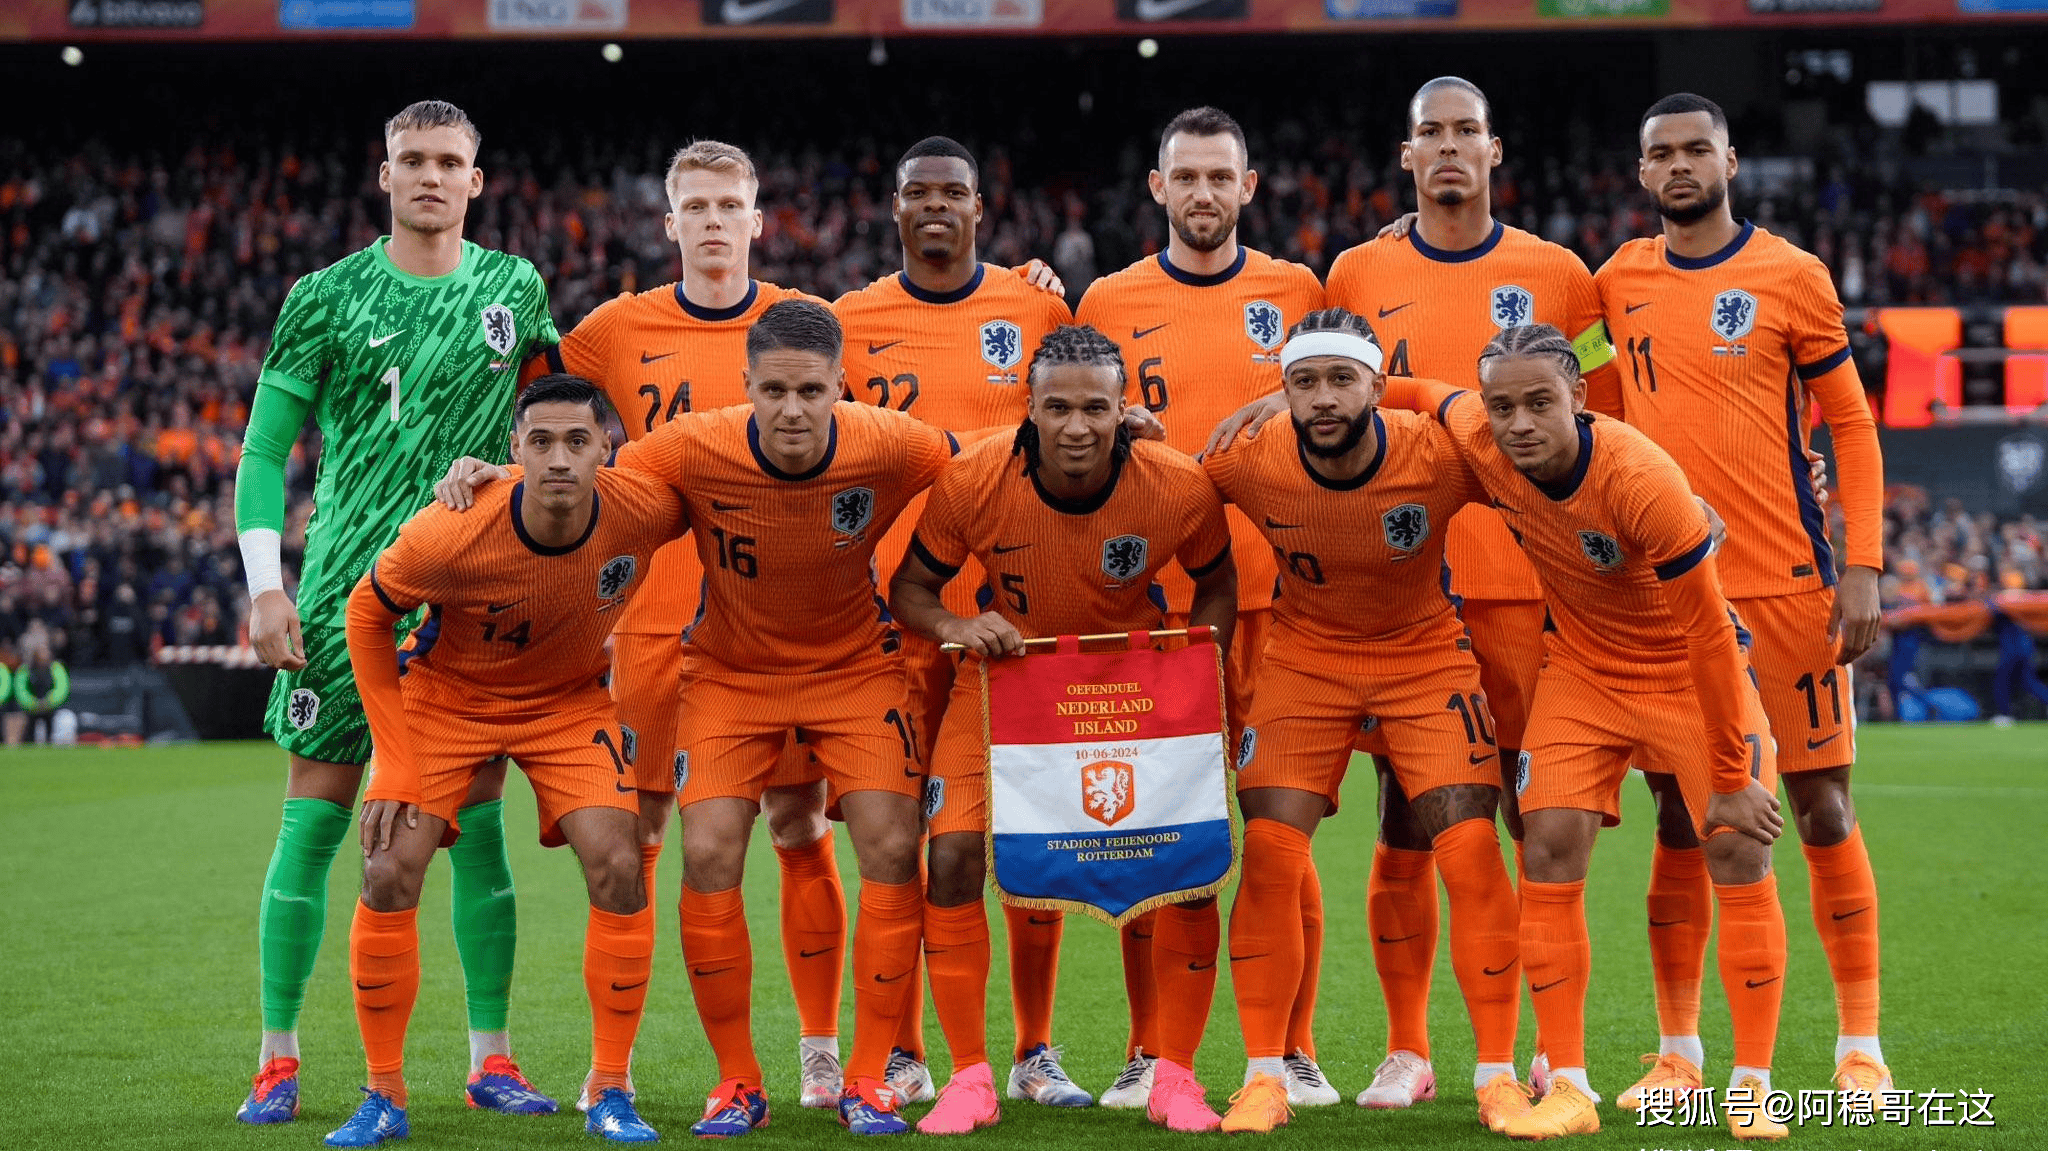 欧洲杯:波兰vs荷兰,核心缺阵!橙衣军团依旧更胜一筹?